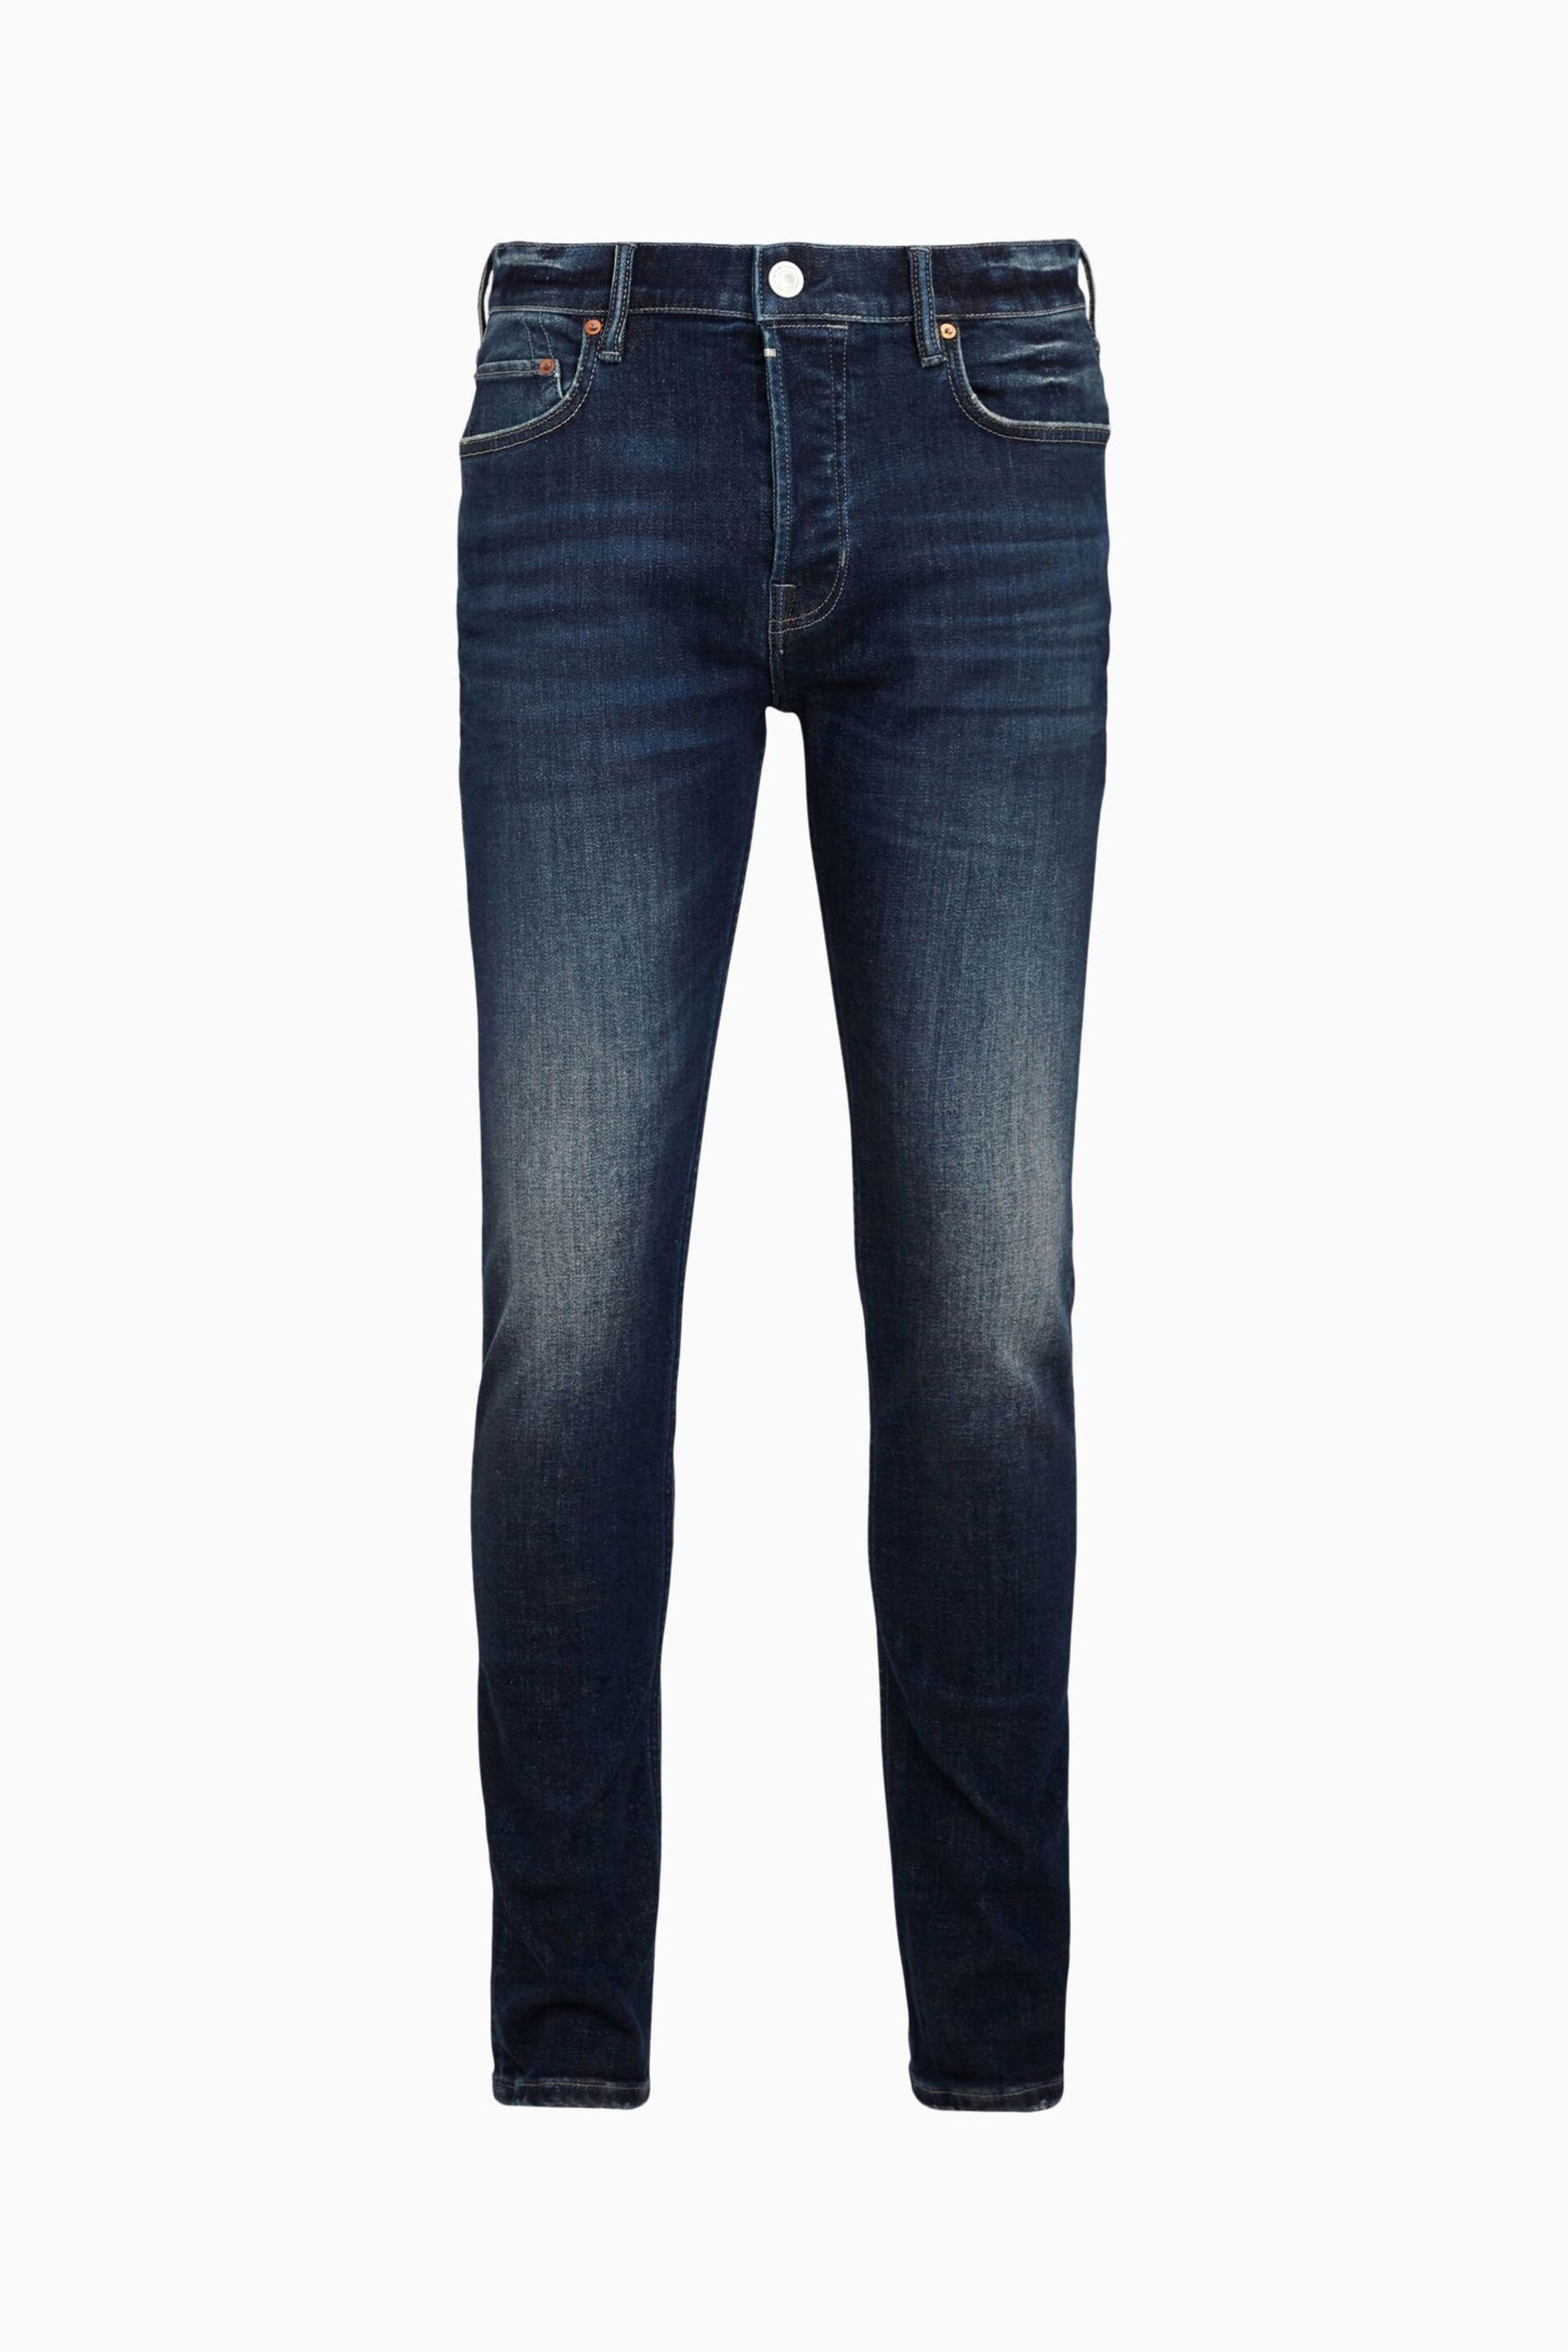 AllSaints Blue Jeans - Image 7 of 7